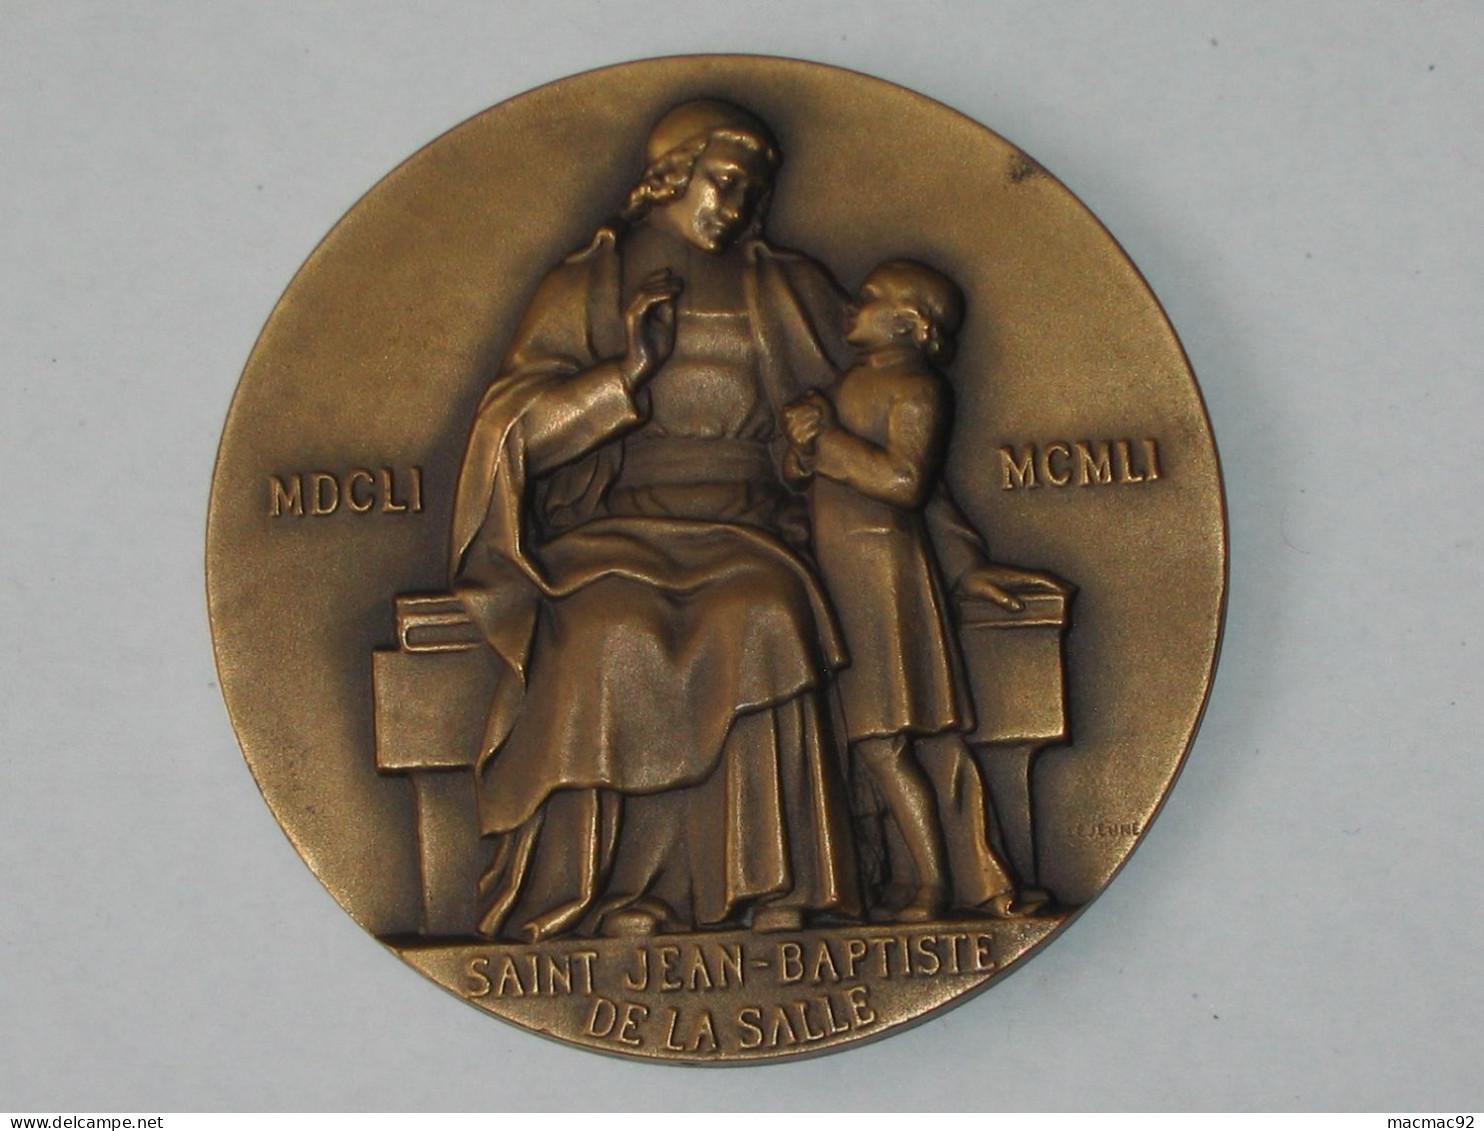 Médaille SAINT JEAN-BAPTISTE DE LA SALLE  - MDCLI-MCMLI **** EN ACHAT IMMEDIAT **** - Royaux / De Noblesse